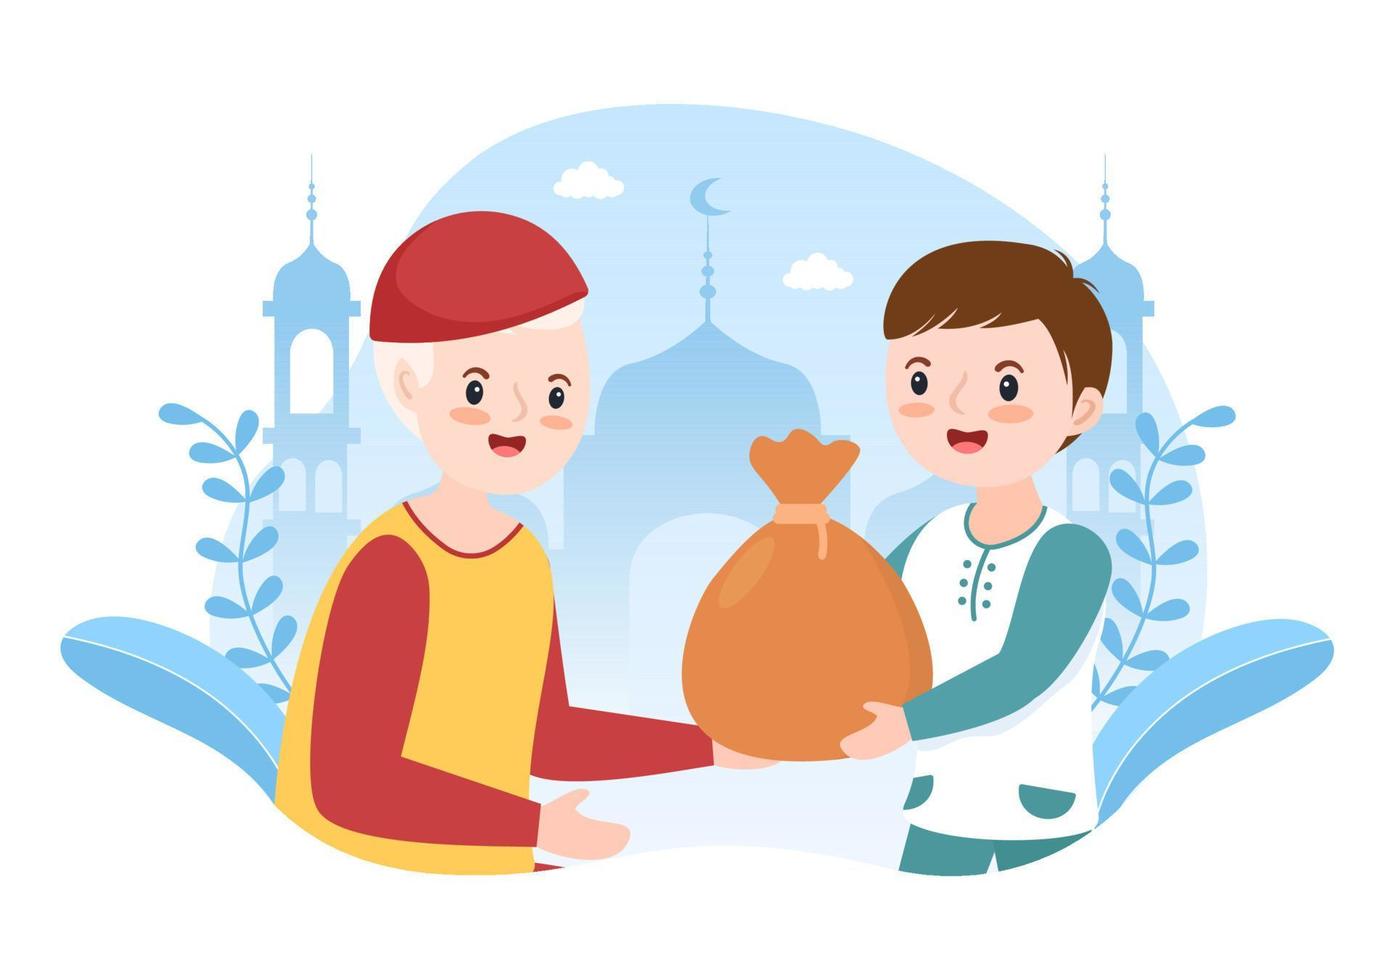 enfants musulmans donnant l'aumône, la zakat ou un don infaq à une personne qui en a besoin dans une affiche de dessin animé plat illustration de modèles dessinés à la main vecteur